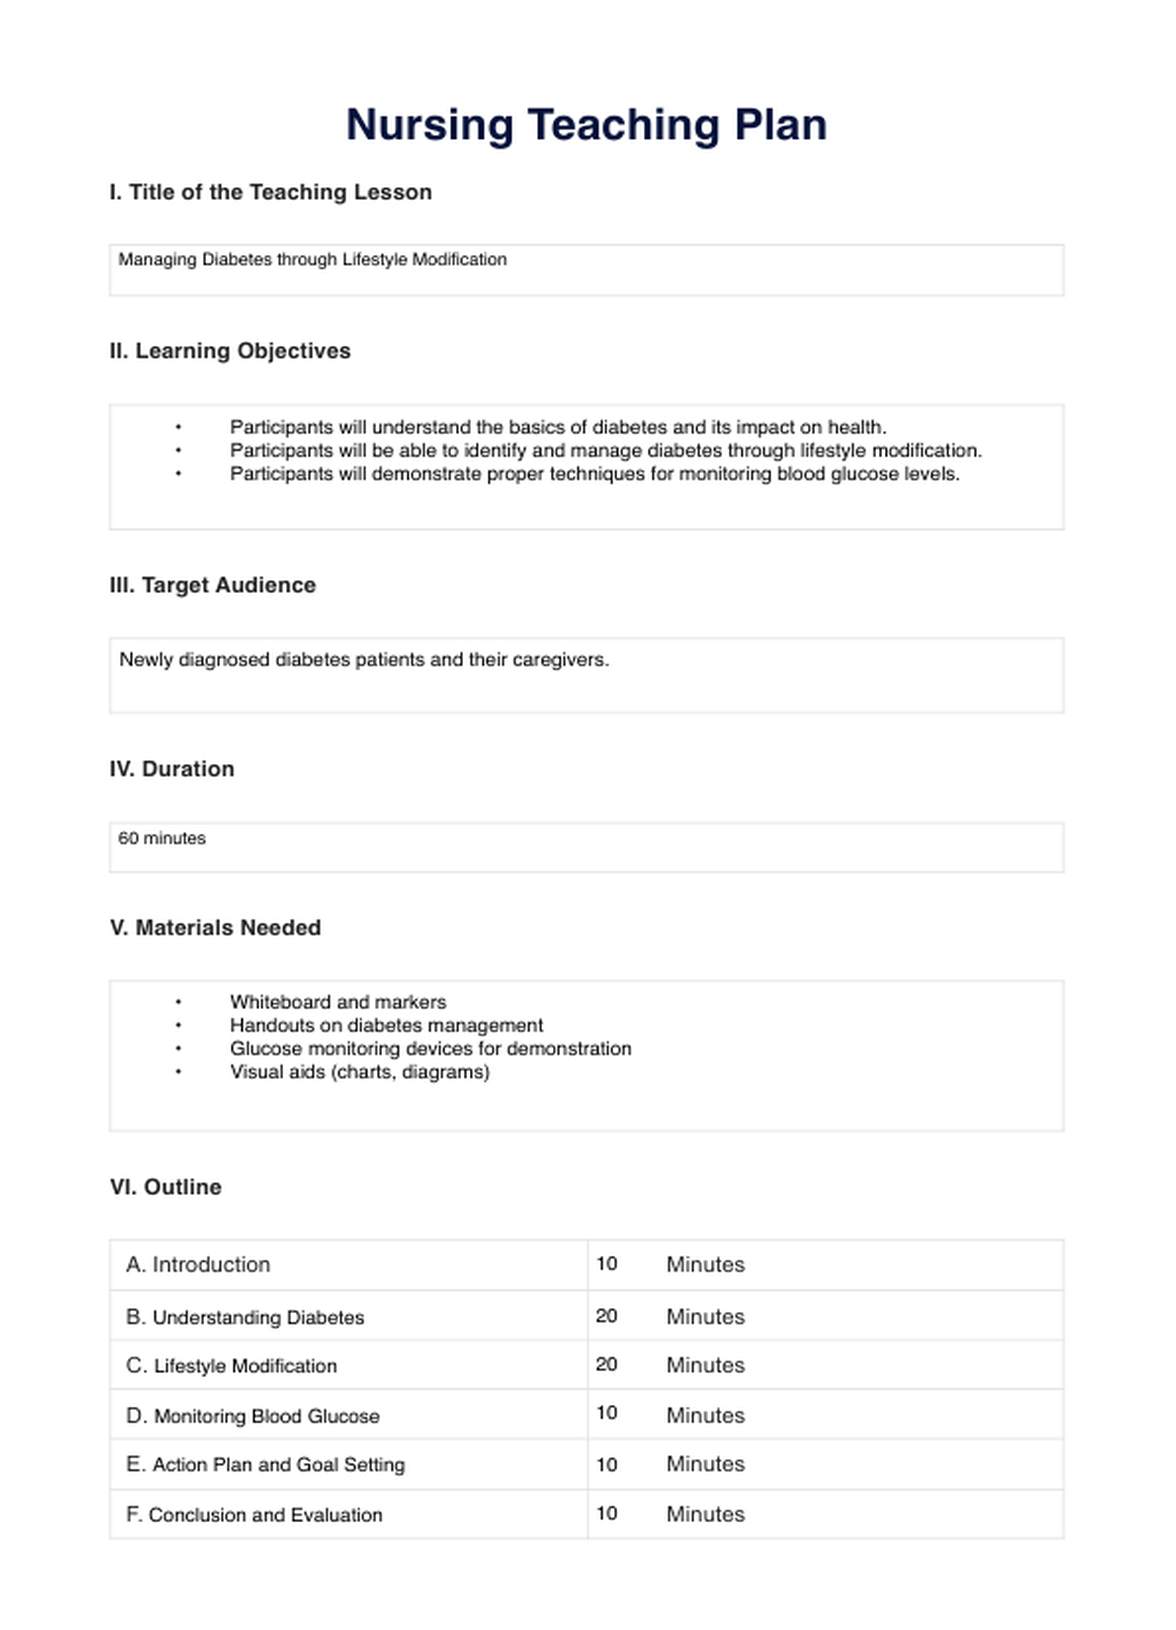 Nursing Teaching Plan PDF Example